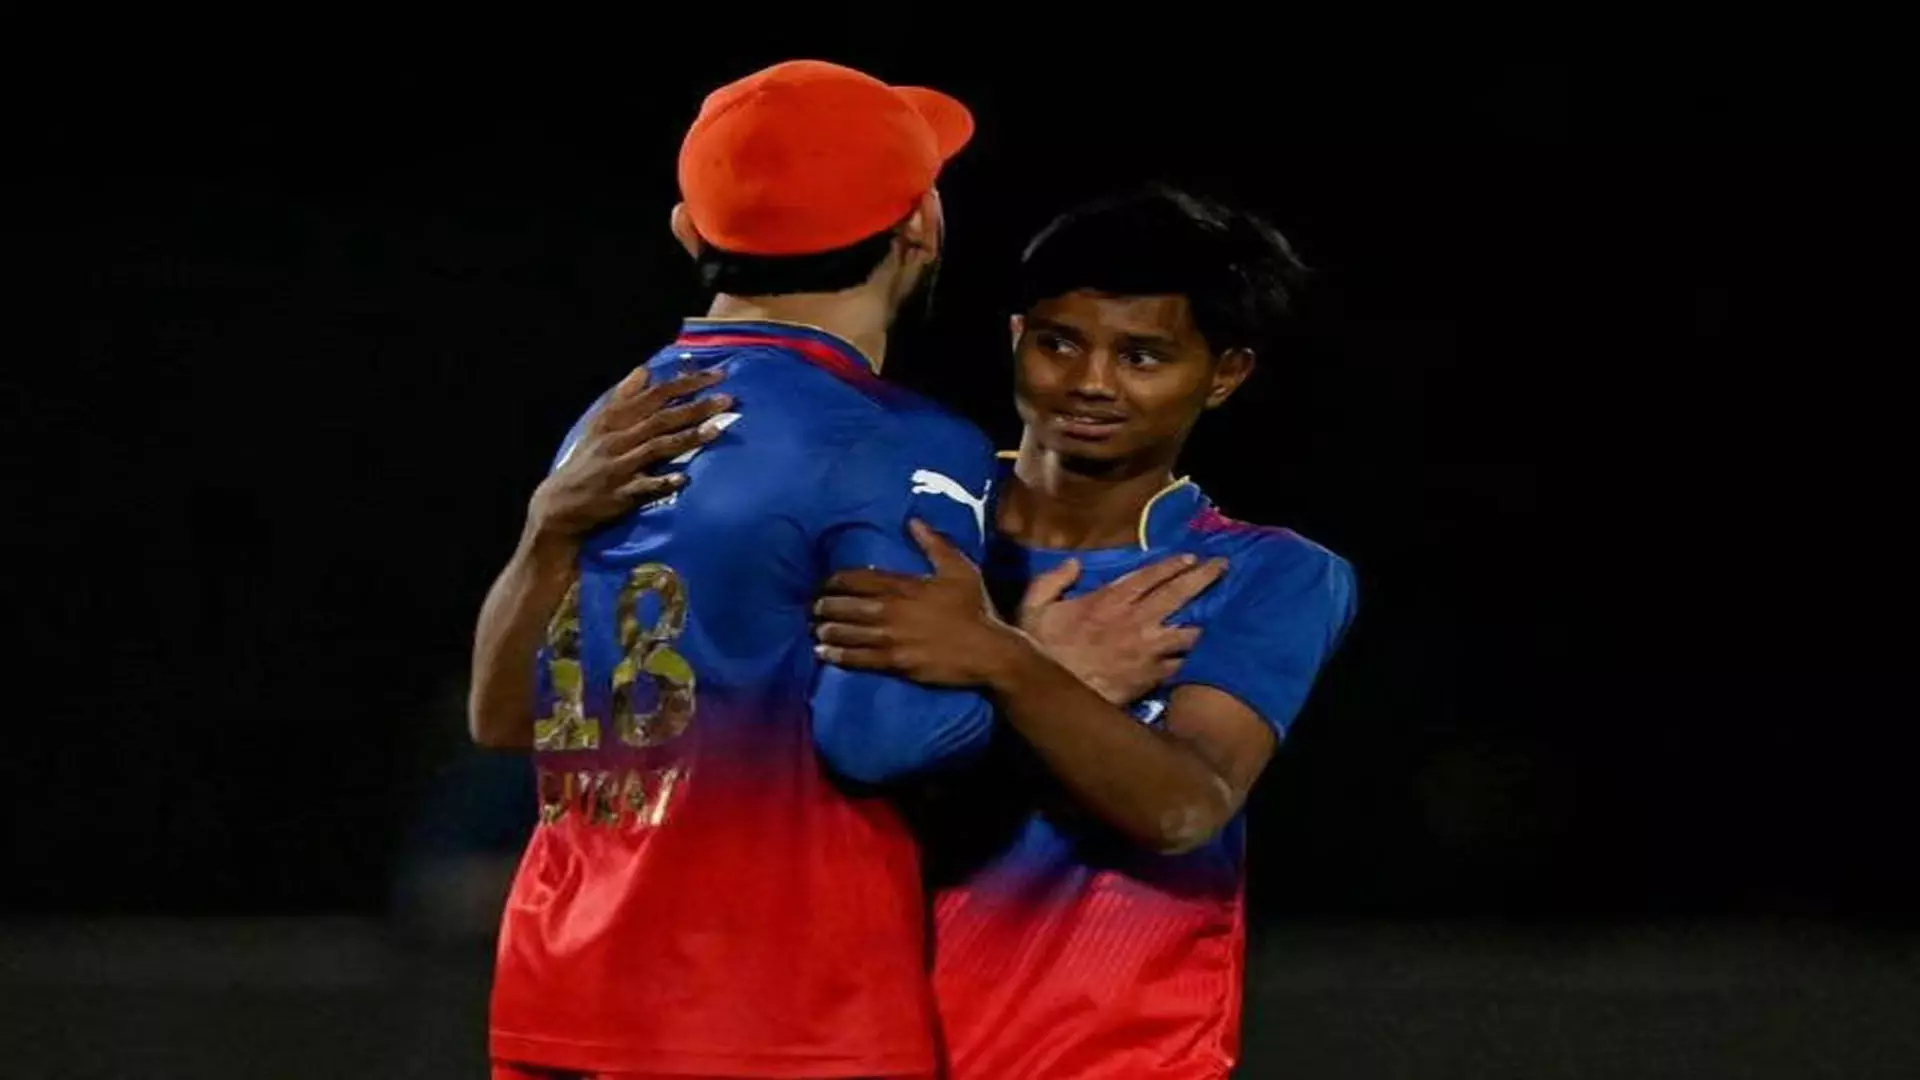 मैच के दौरान विराट कोहली को गले लगाने के लिए पिच पर दौड़ा युवा फैन, वीडियो